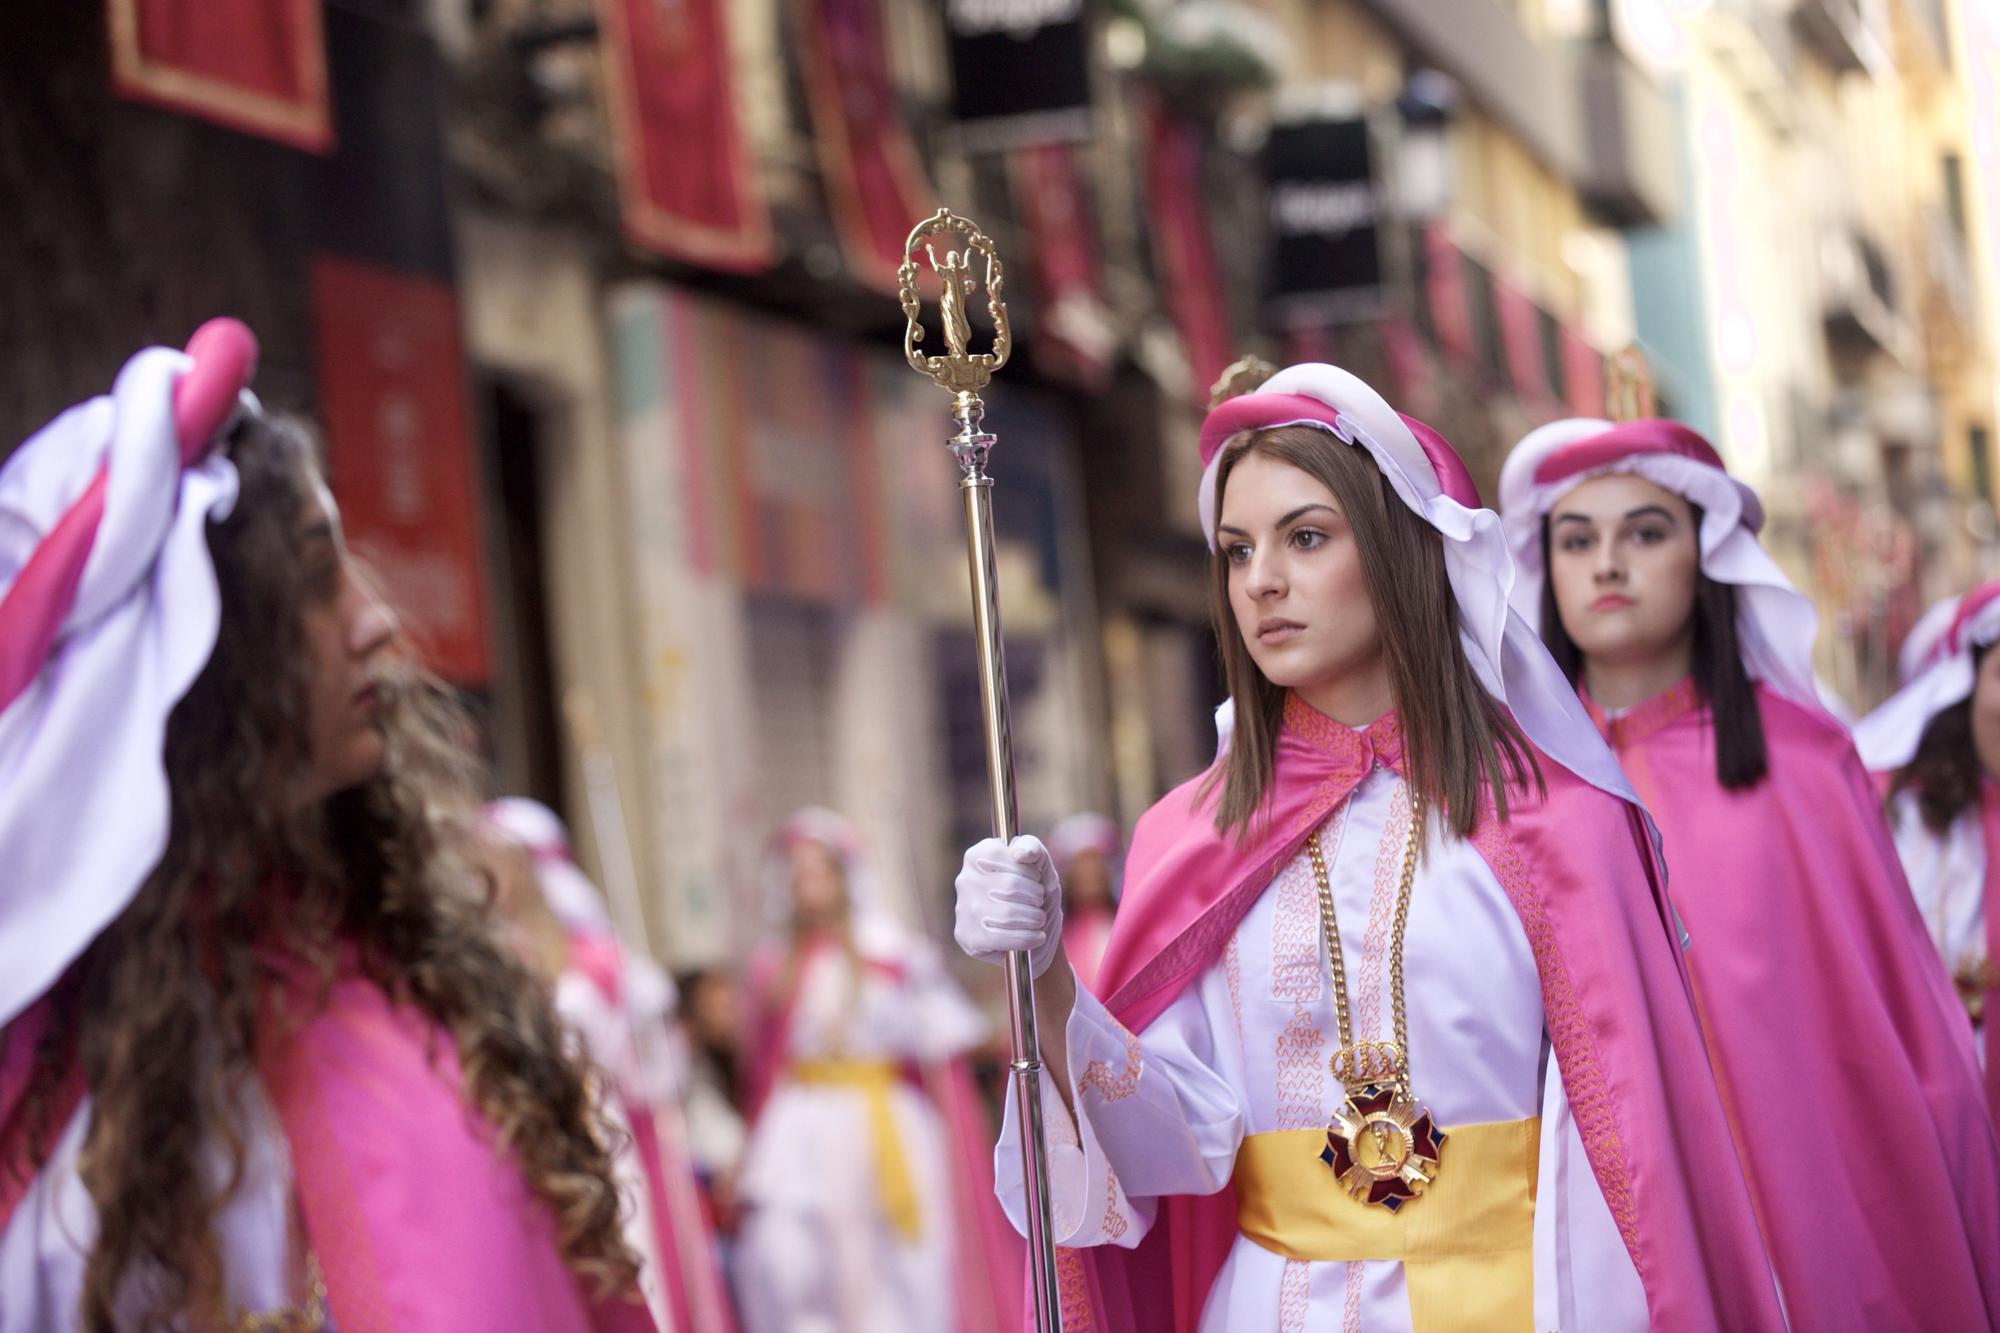 Las imágenes de la procesión del Domingo de Resurreción en Murcia